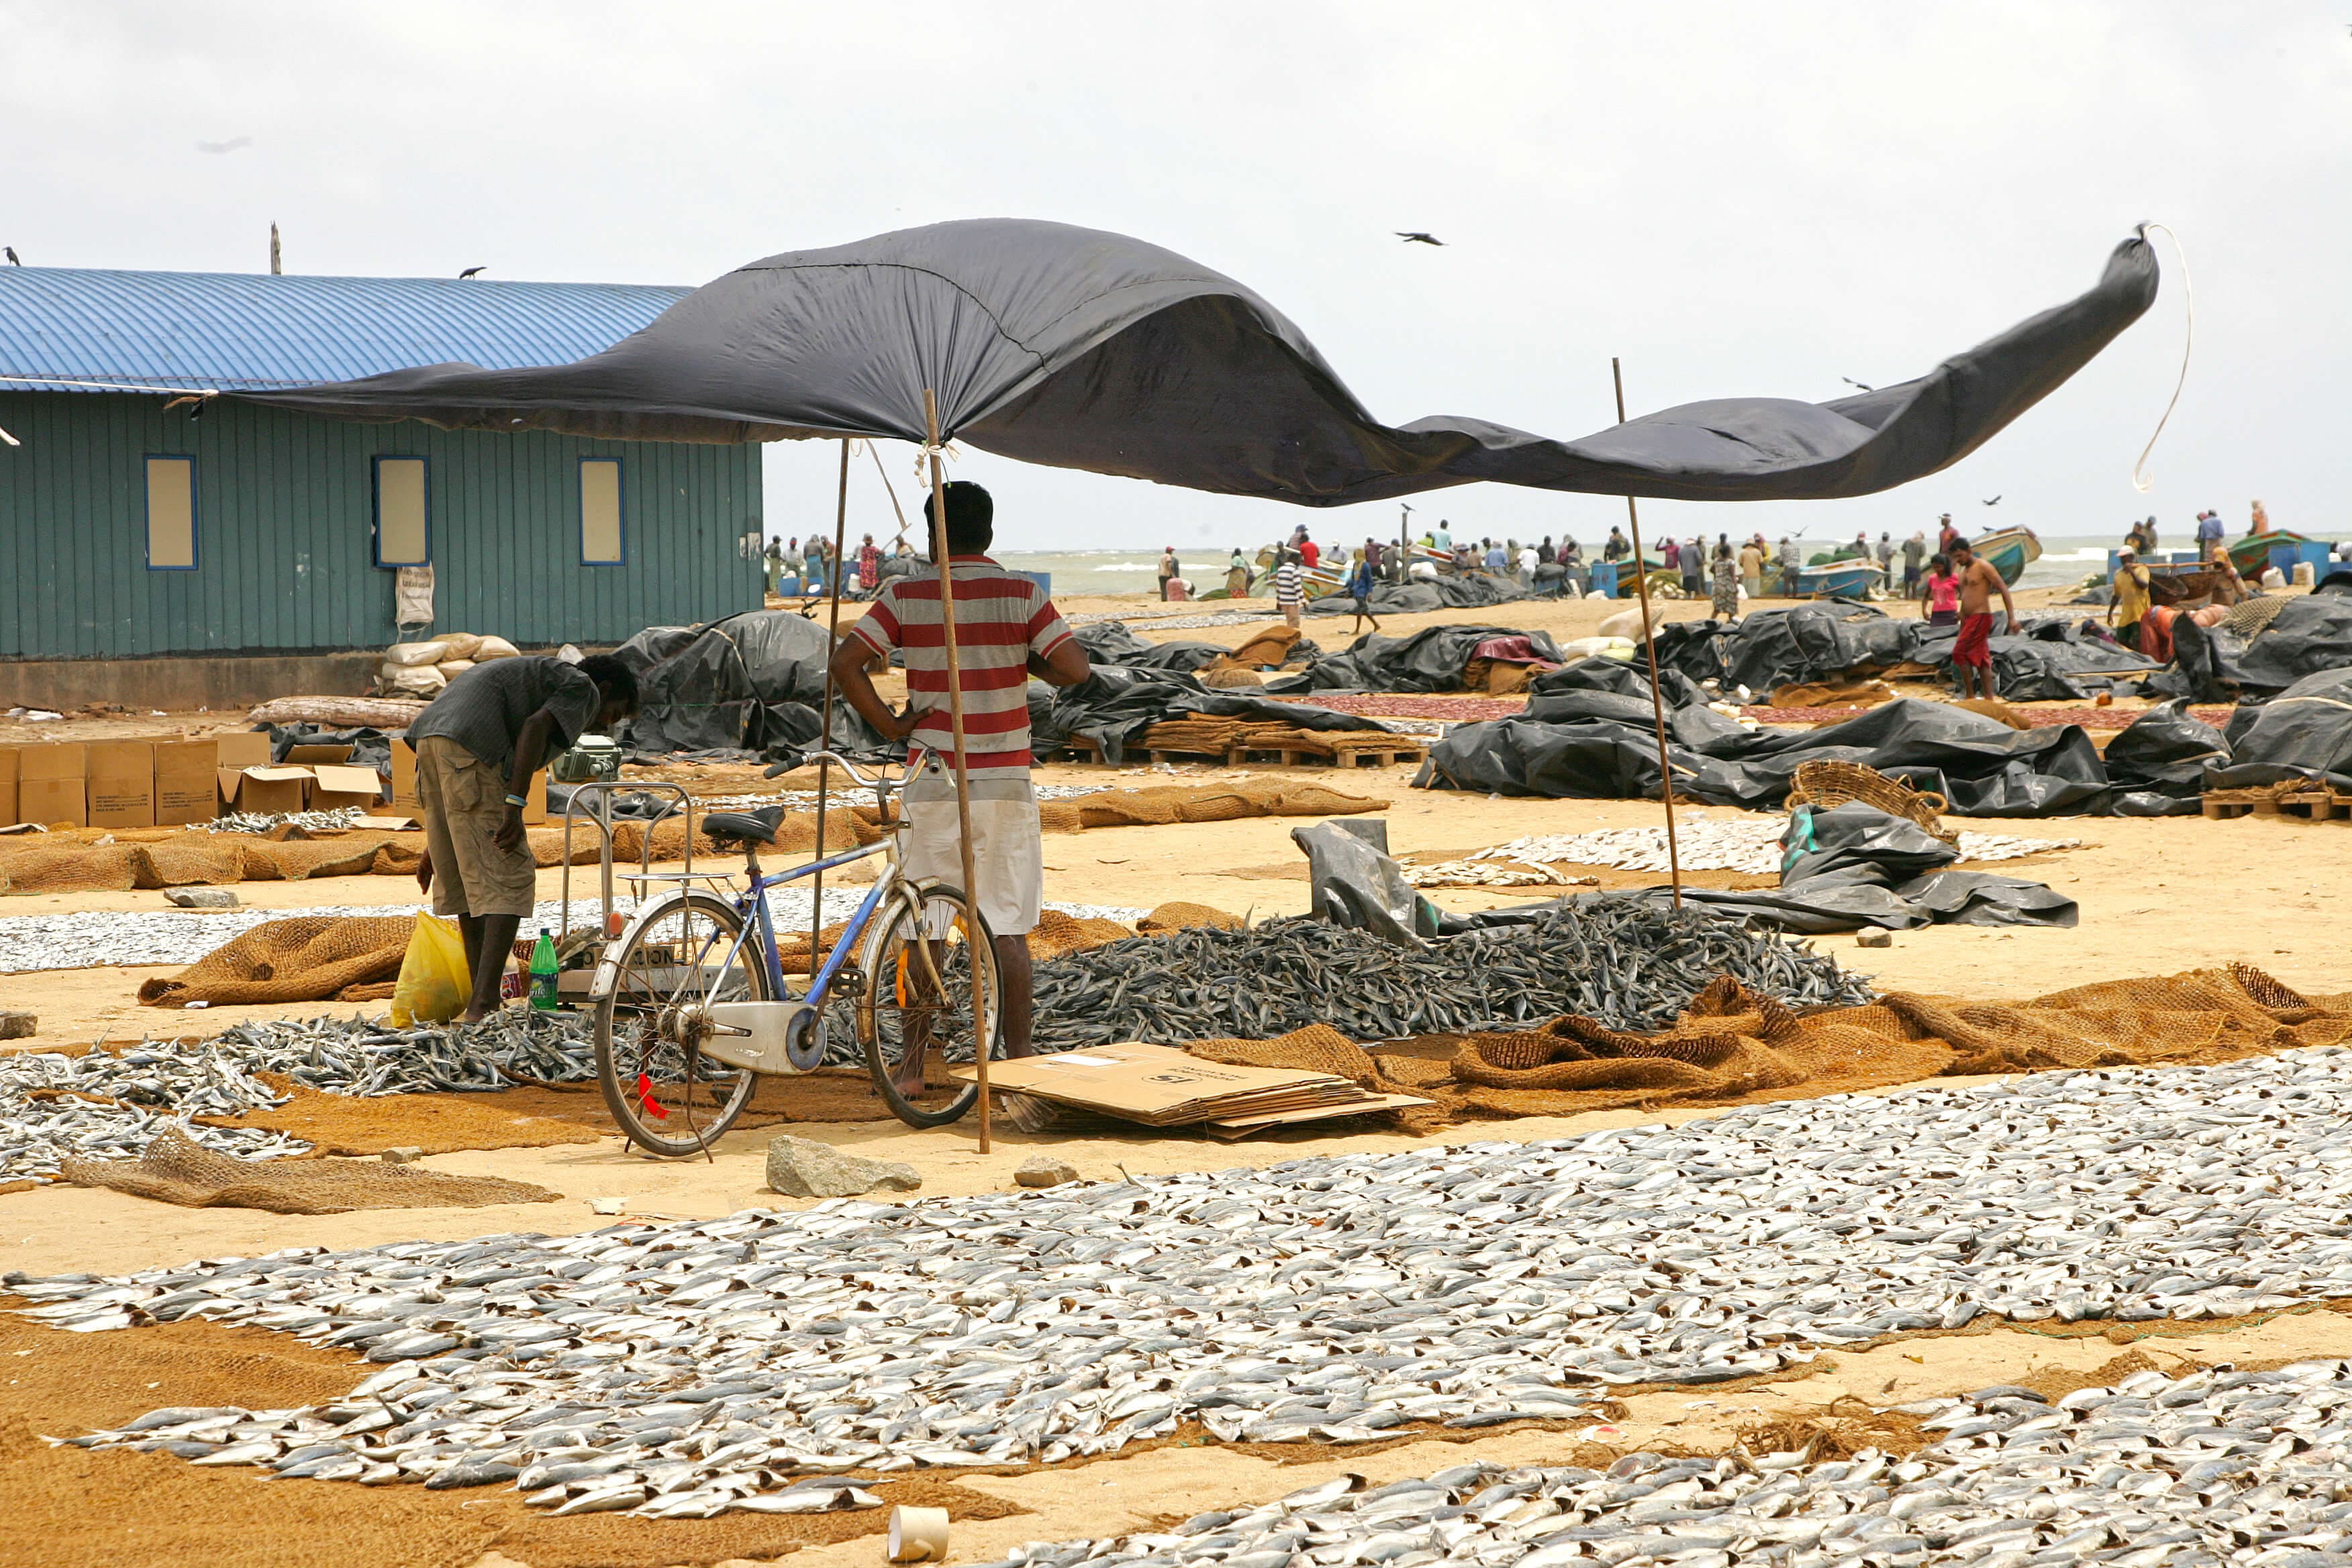 يتم تجفيف الأسماك في قرية صيد الأسماك نيجومبو ، سريلانكا.